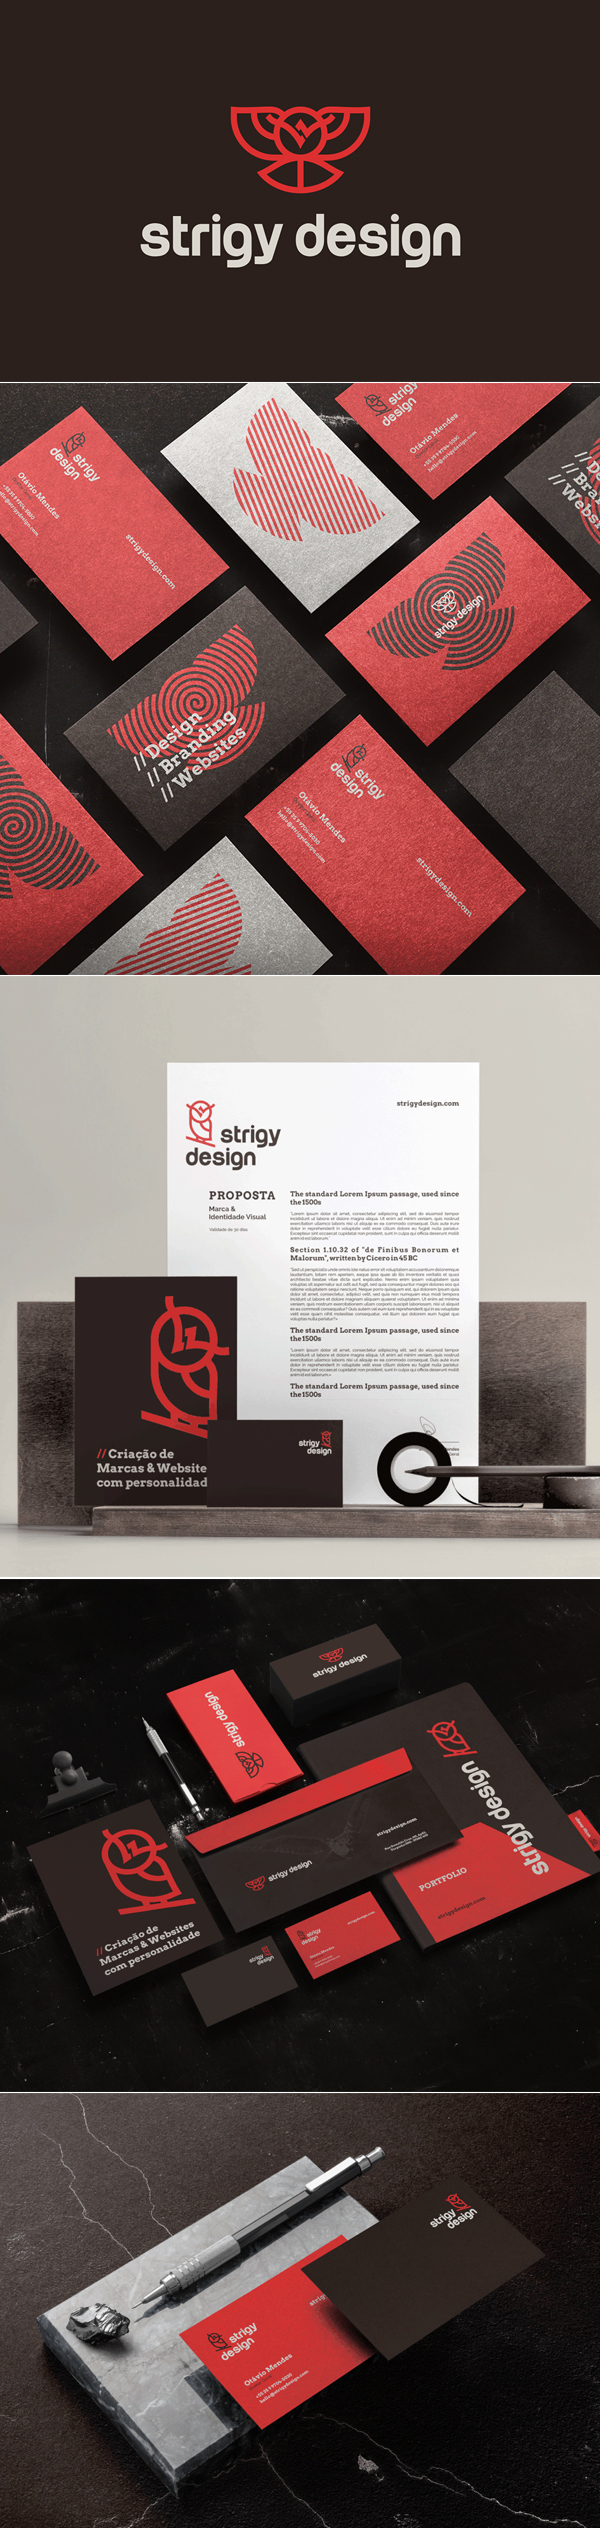 Logo - Strigy Design Branding Identity by Strigy Design